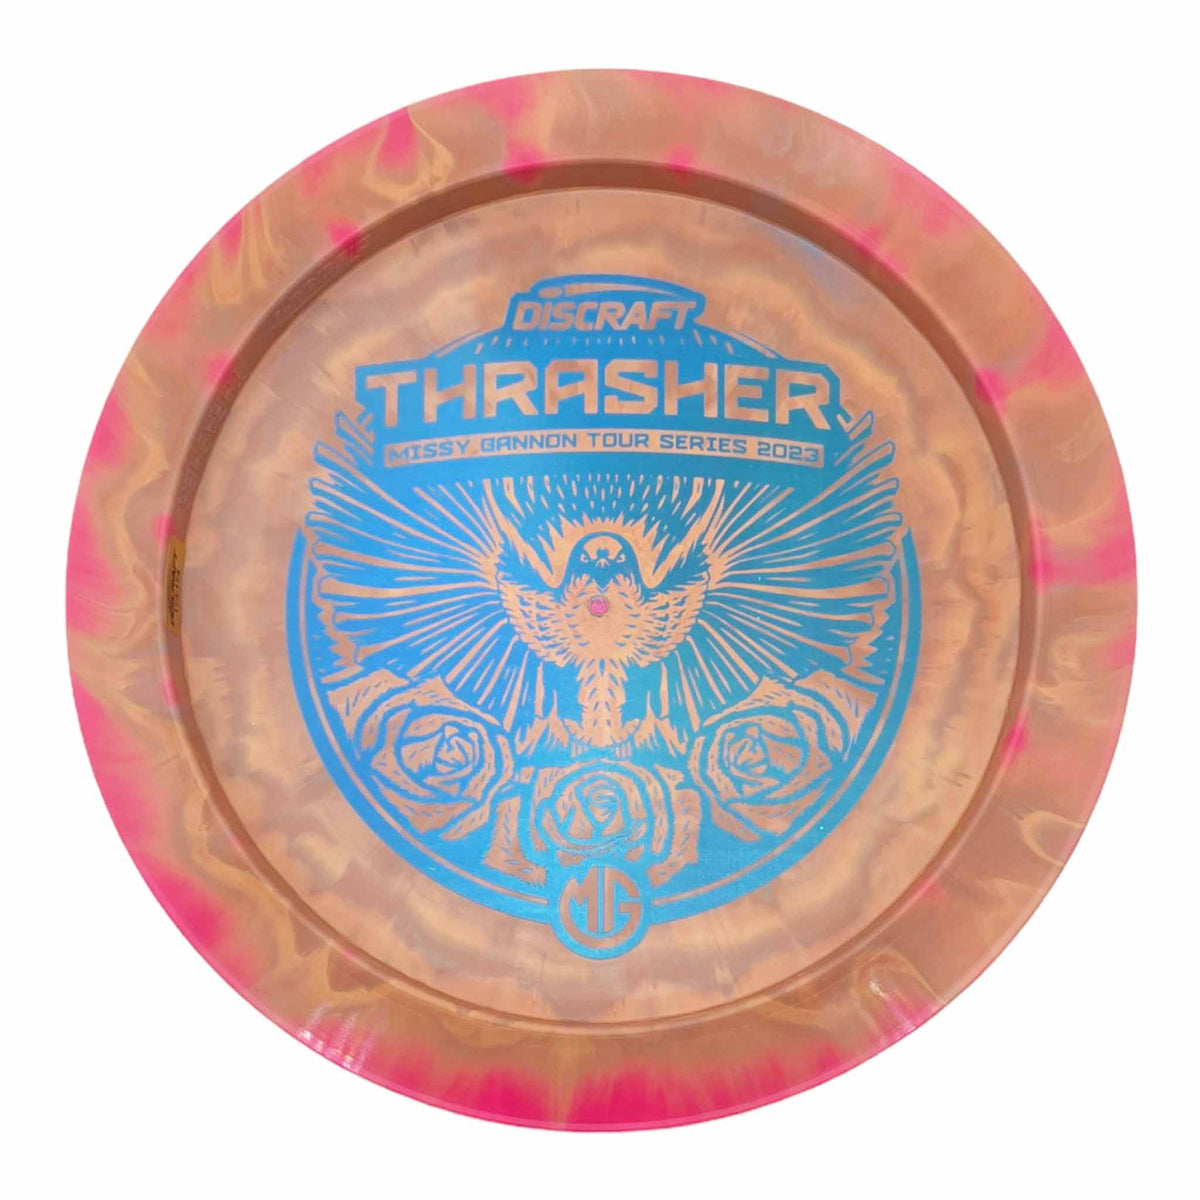 Discraft 2023 Missy Gannon Tour Series Thrasher distance driver - Orange / Blue